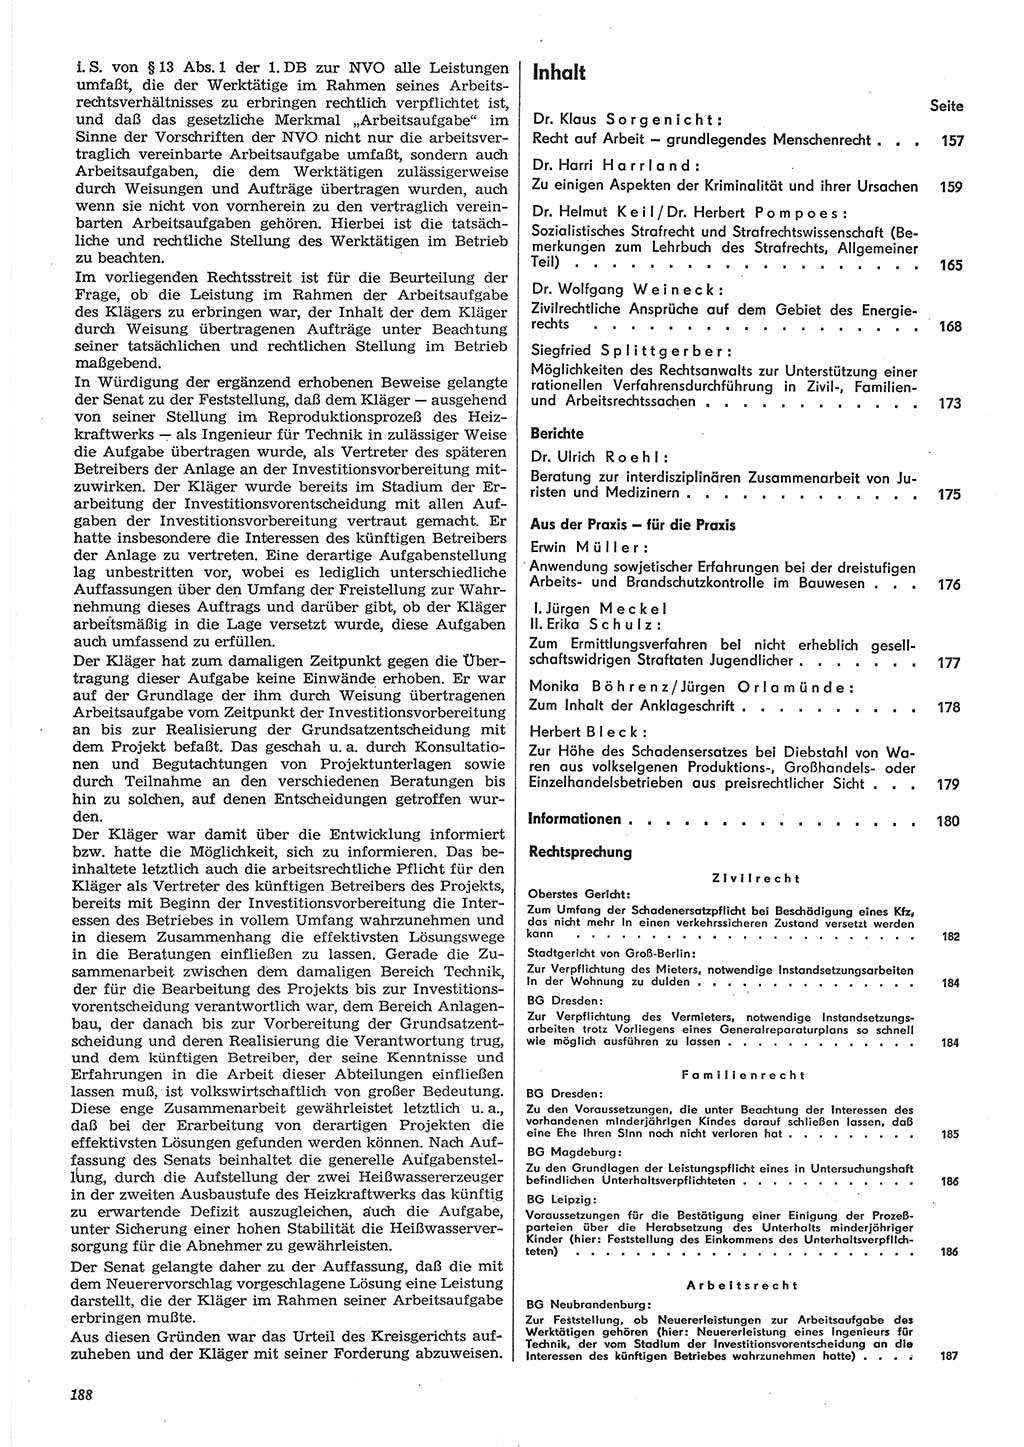 Neue Justiz (NJ), Zeitschrift für Recht und Rechtswissenschaft-Zeitschrift, sozialistisches Recht und Gesetzlichkeit, 31. Jahrgang 1977, Seite 188 (NJ DDR 1977, S. 188)